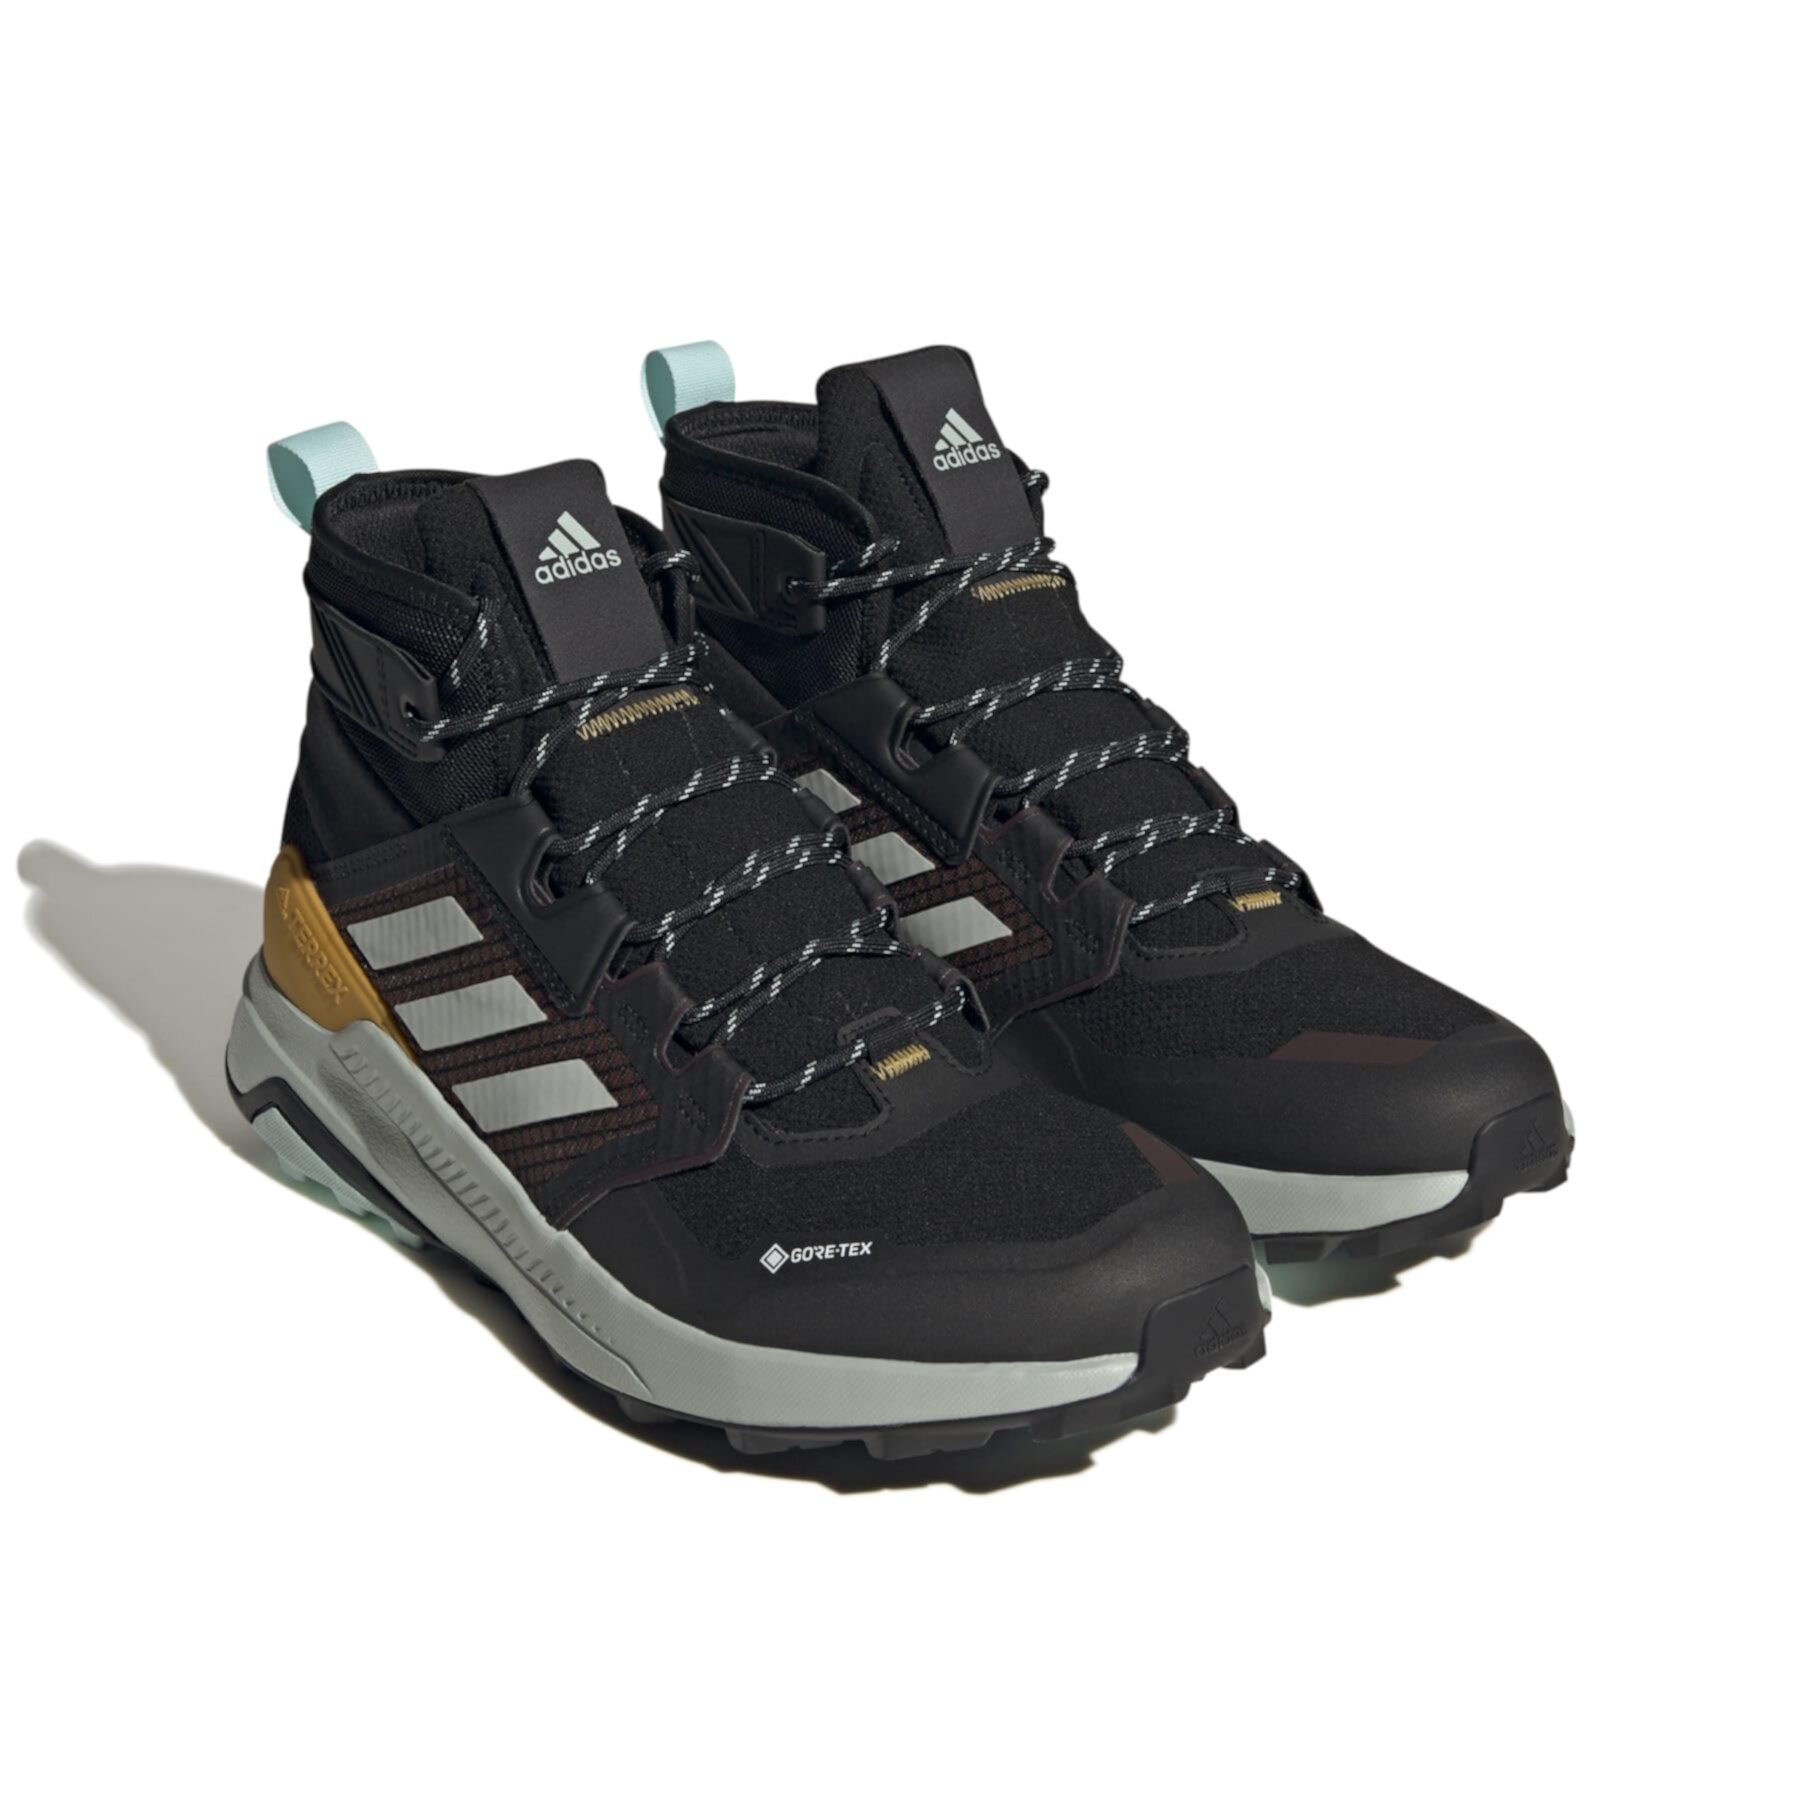 Ботинки для походов Adidas Terrex Trailmaker Mid GTX для мужчин Adidas